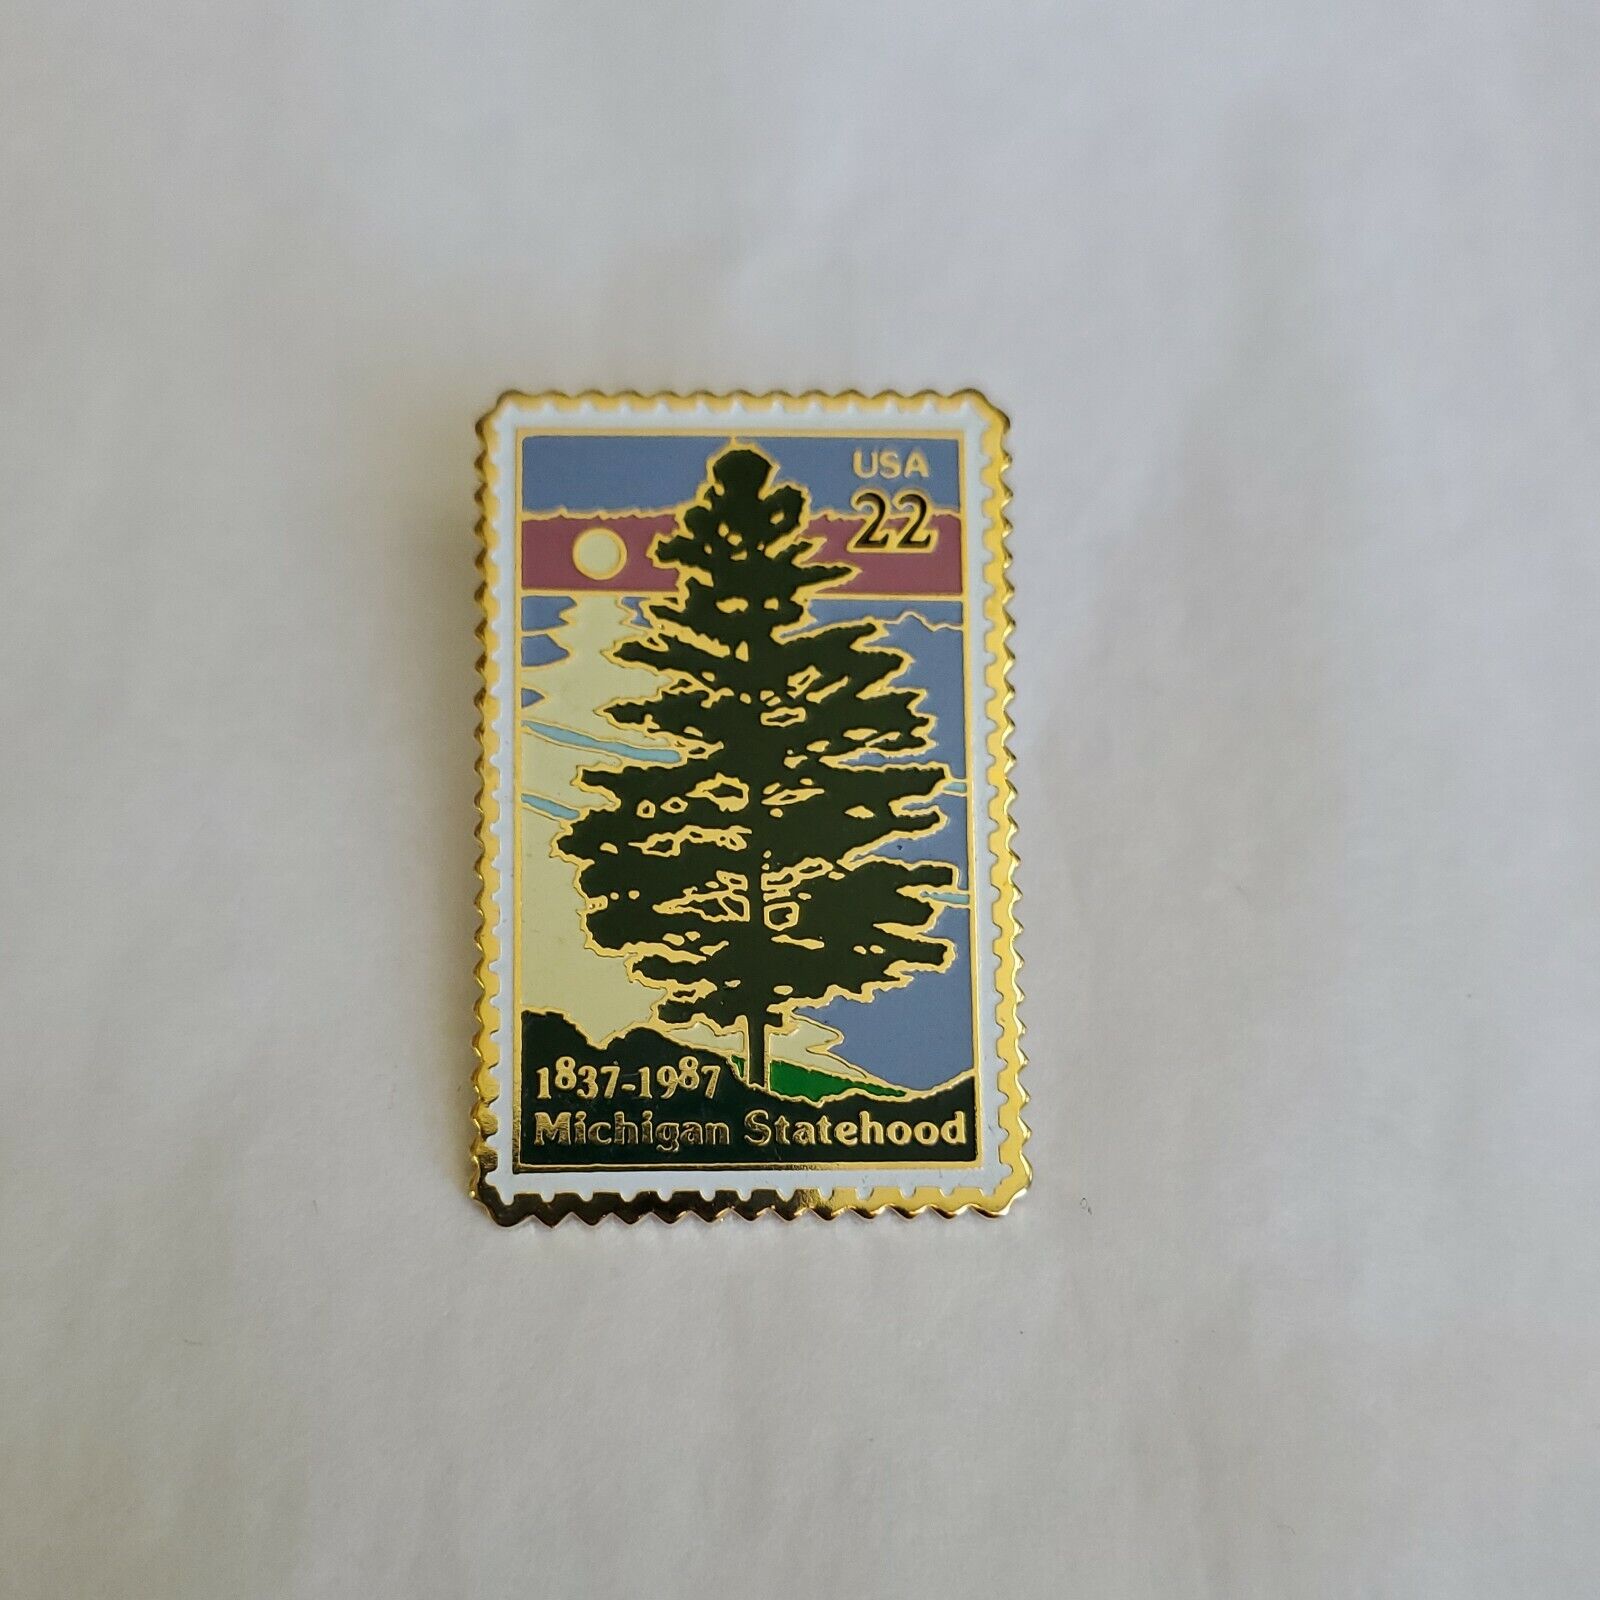 USA Stamp Lapel Pin Michigan Statehood 1837 - 1987